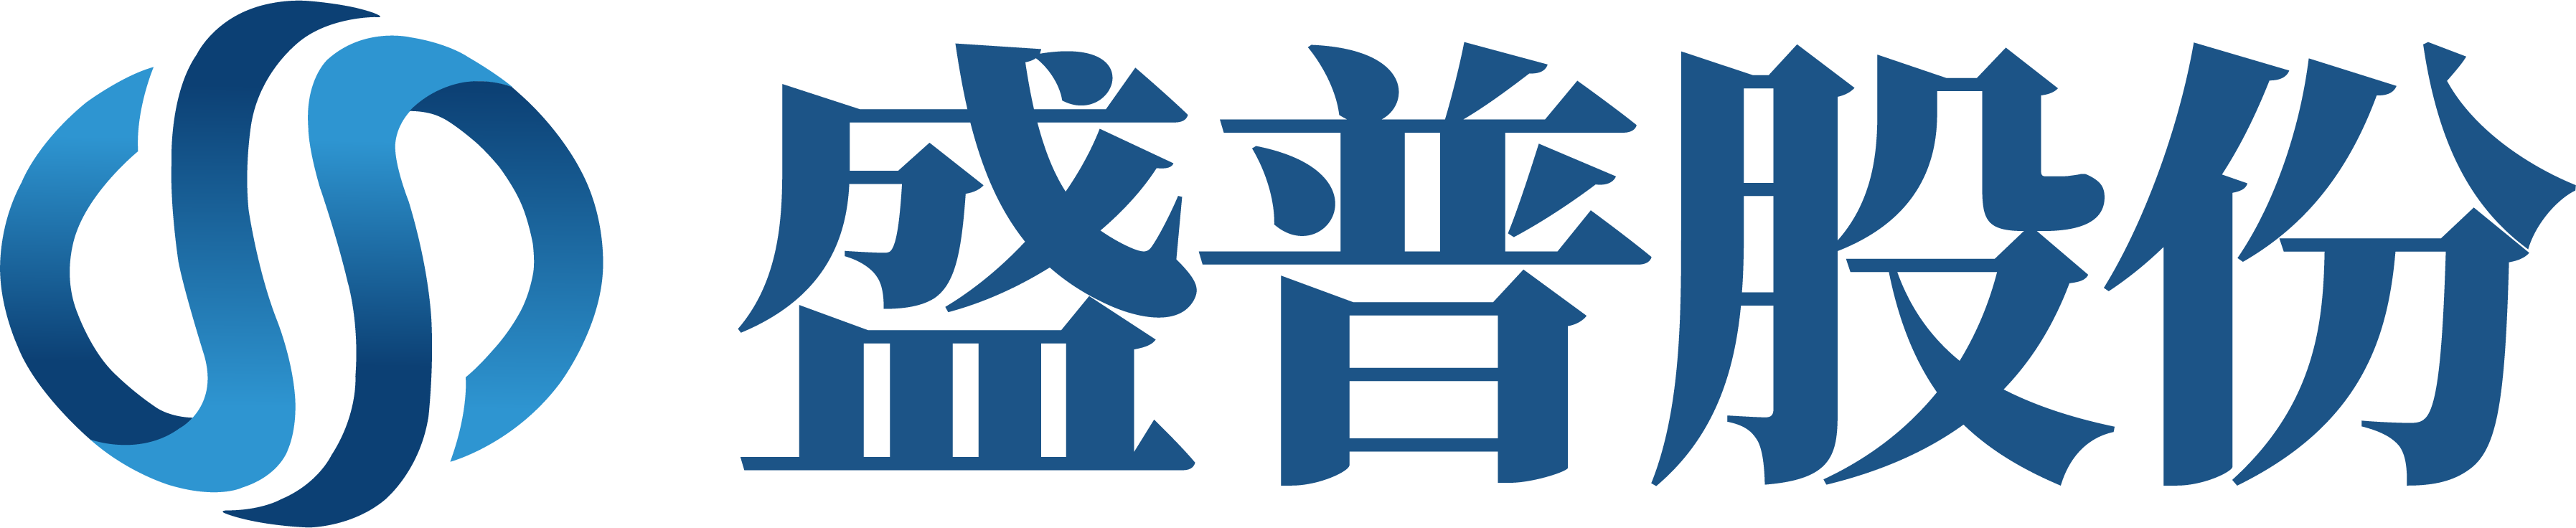 上海赢博体育(中国)责任有限公司智能设备有限公司